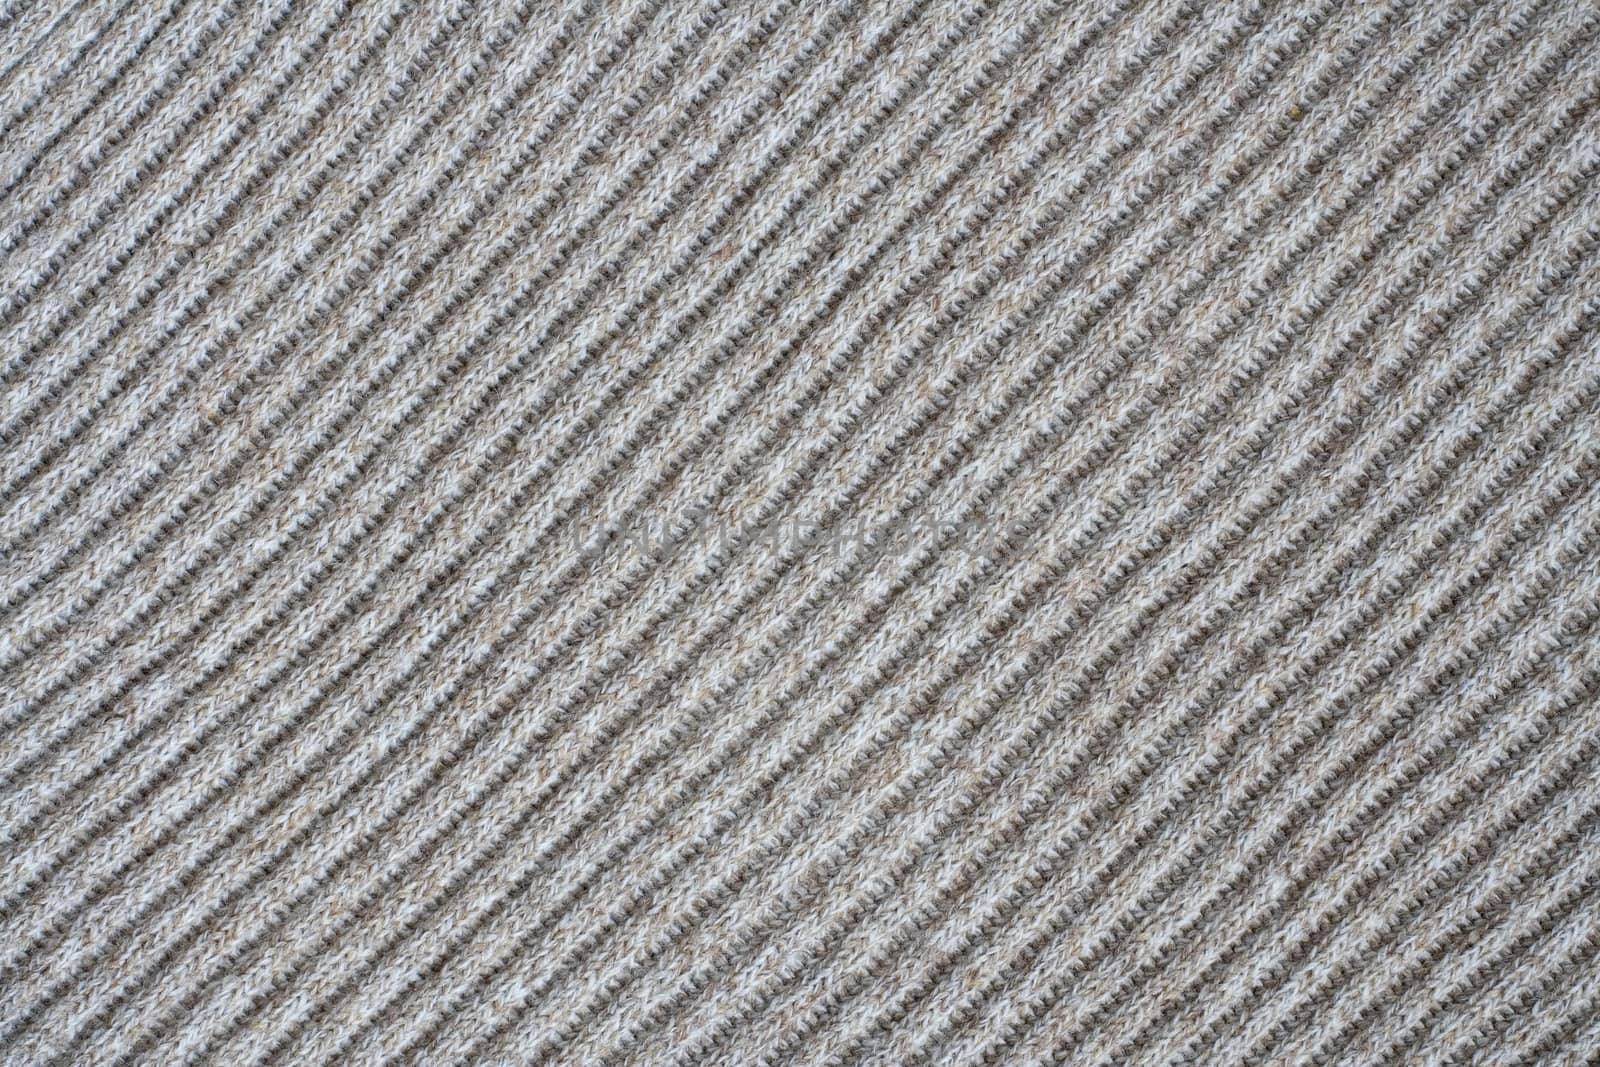 Wool Texture by Sergius